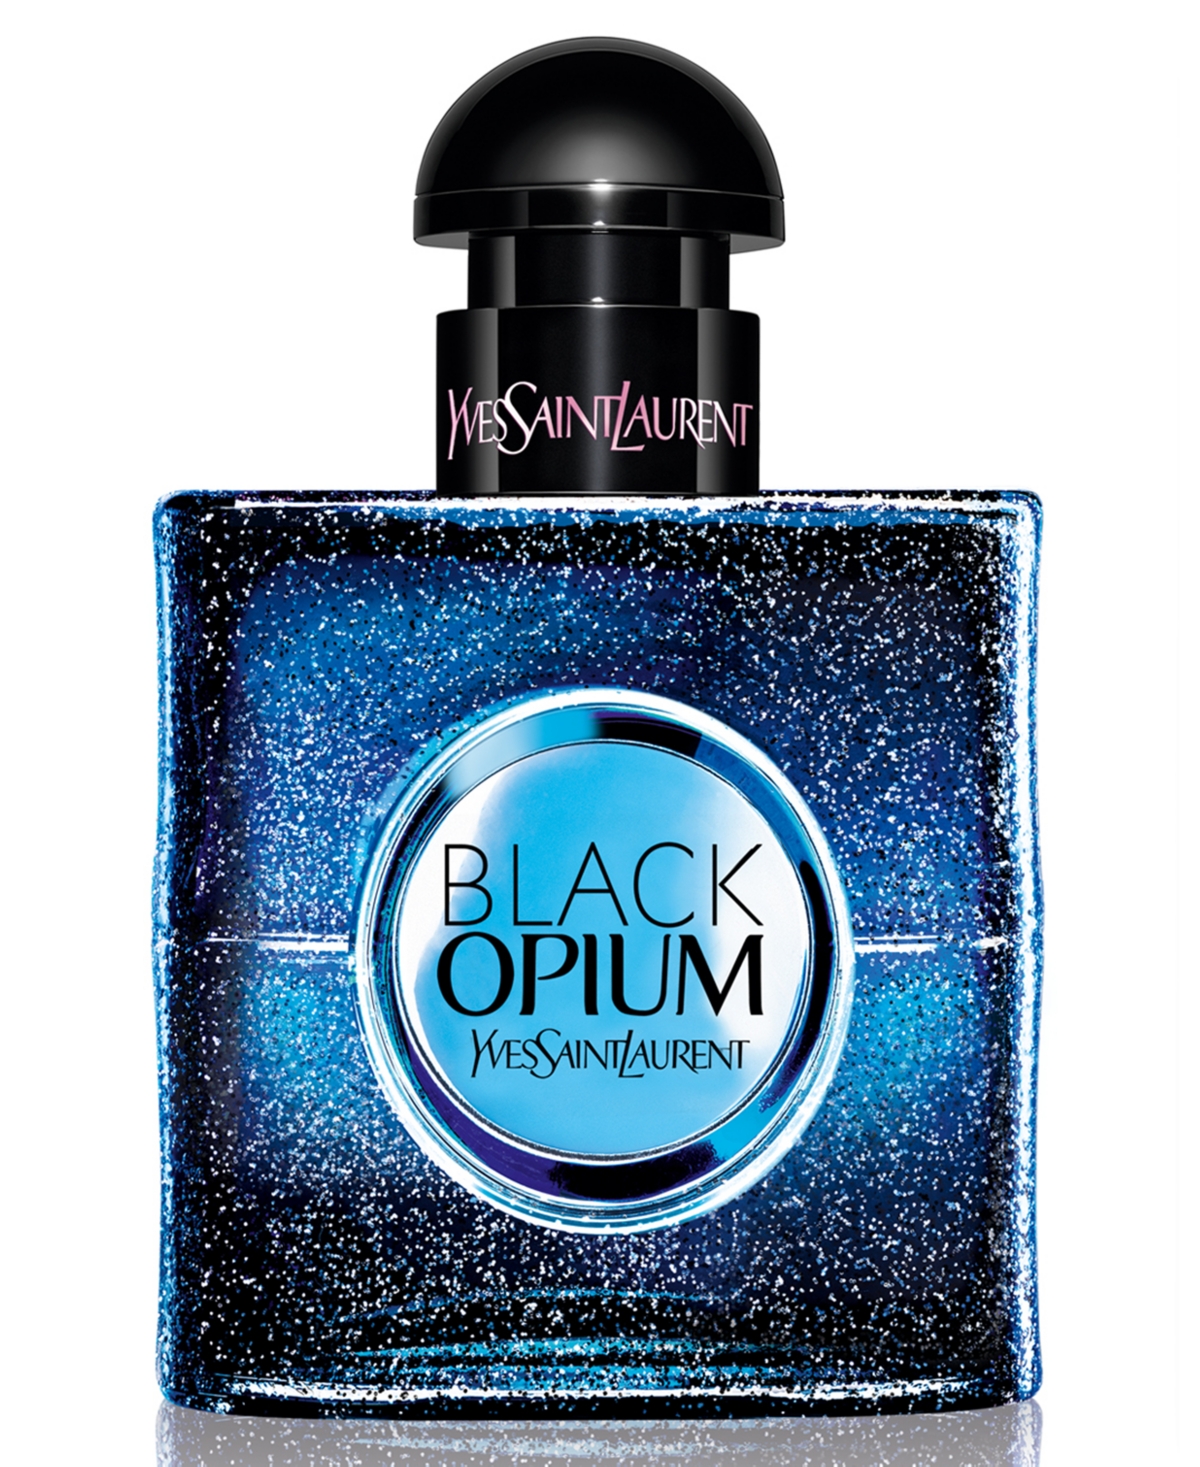 Yves Saint Laurent Black Opium Eau de Parfum Intense Spray, 1-oz. - Macy's